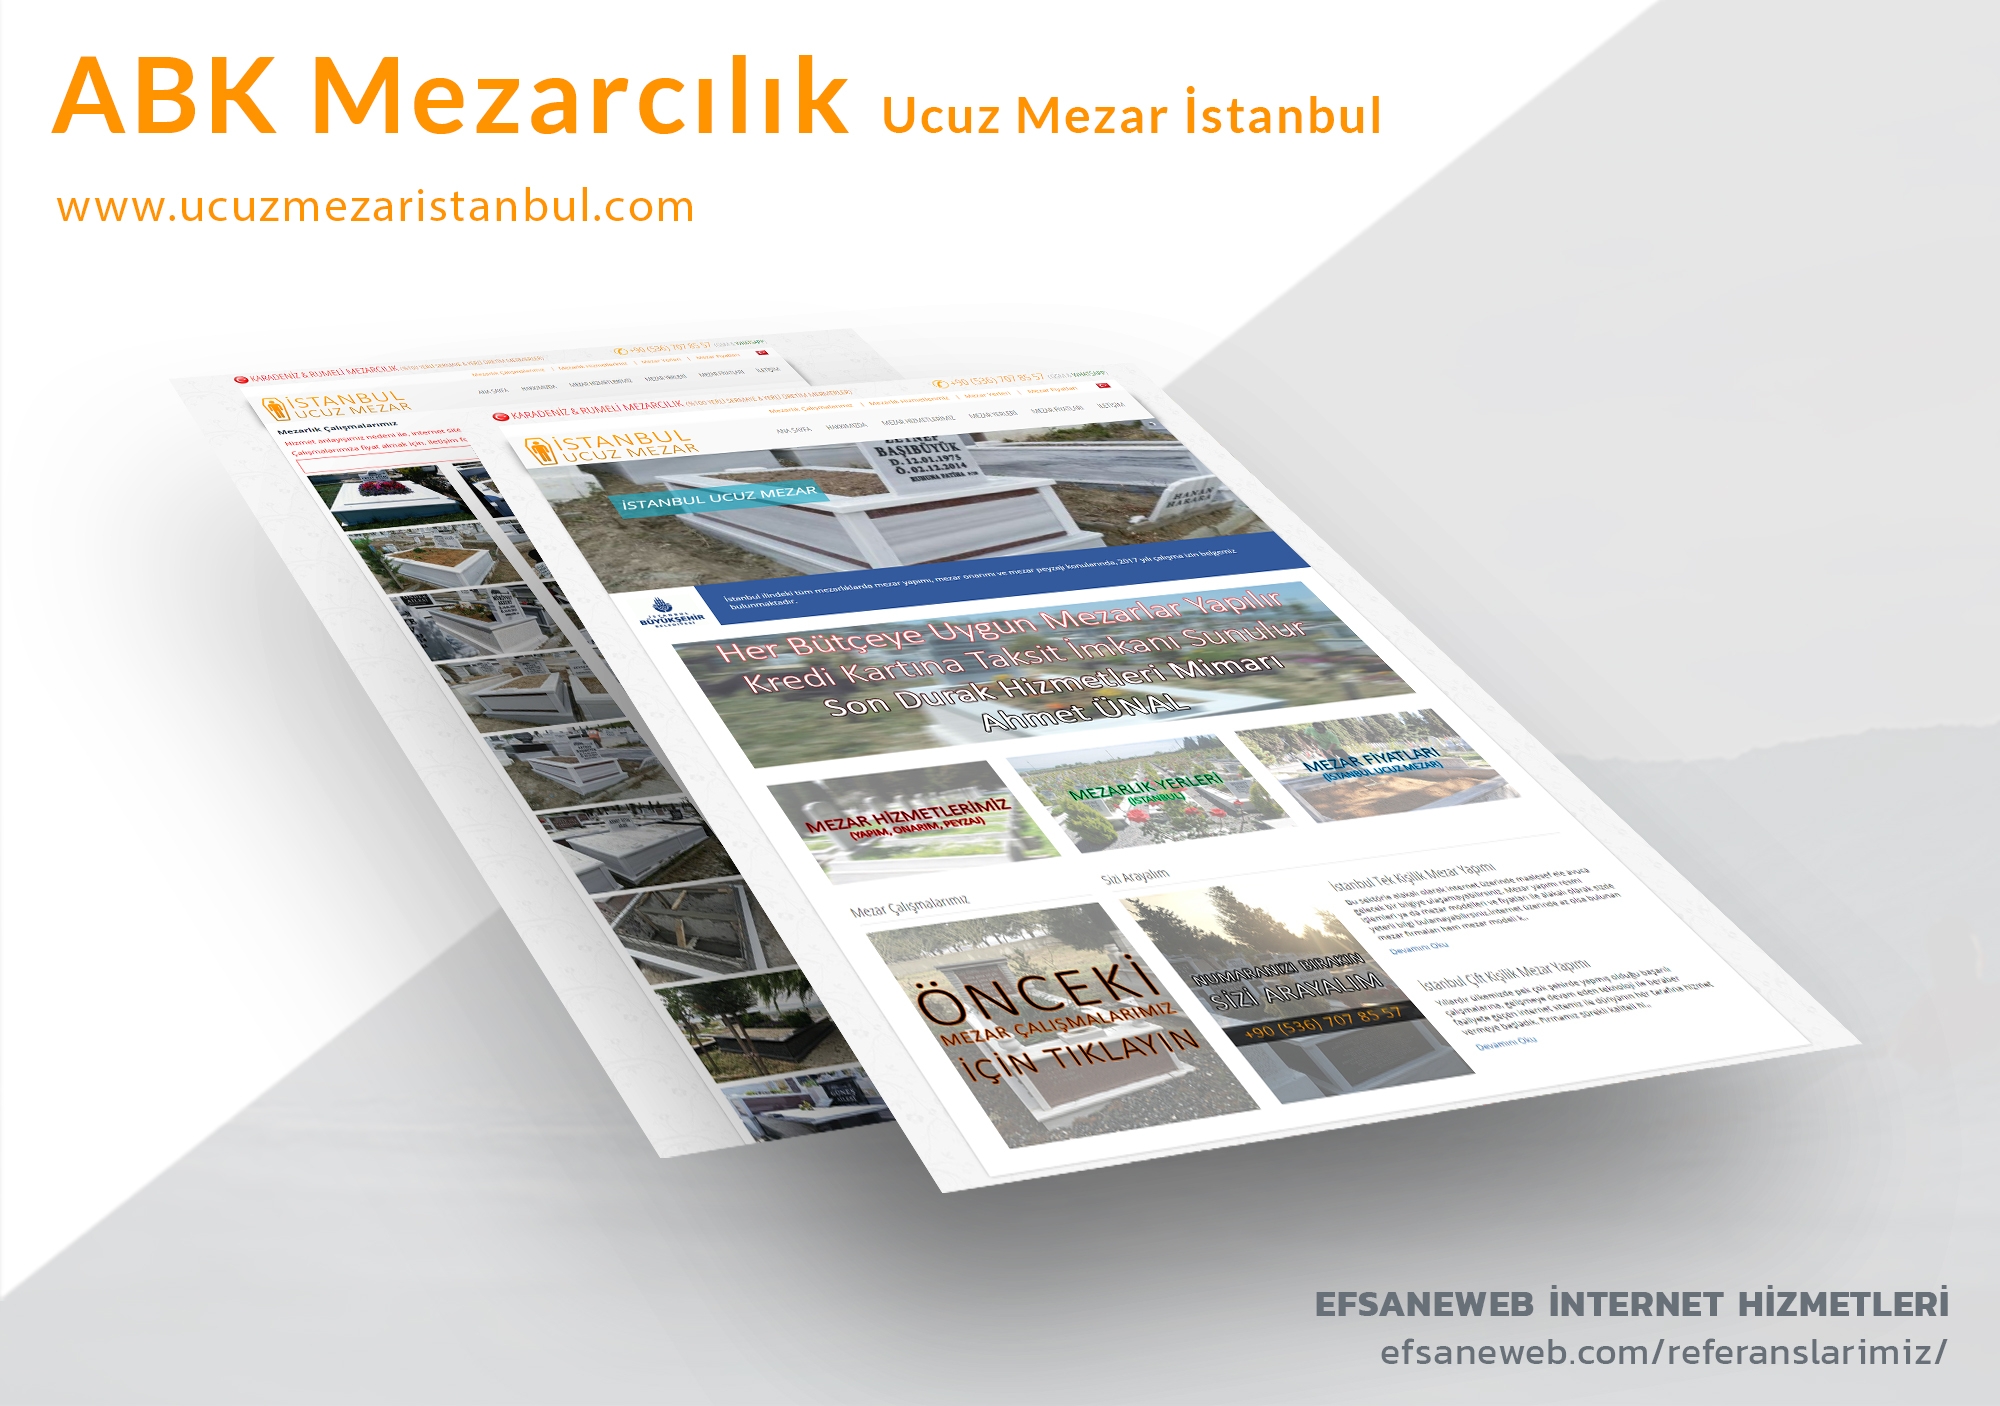 Ucuz Mezar İstanbul İnternet Sitesi